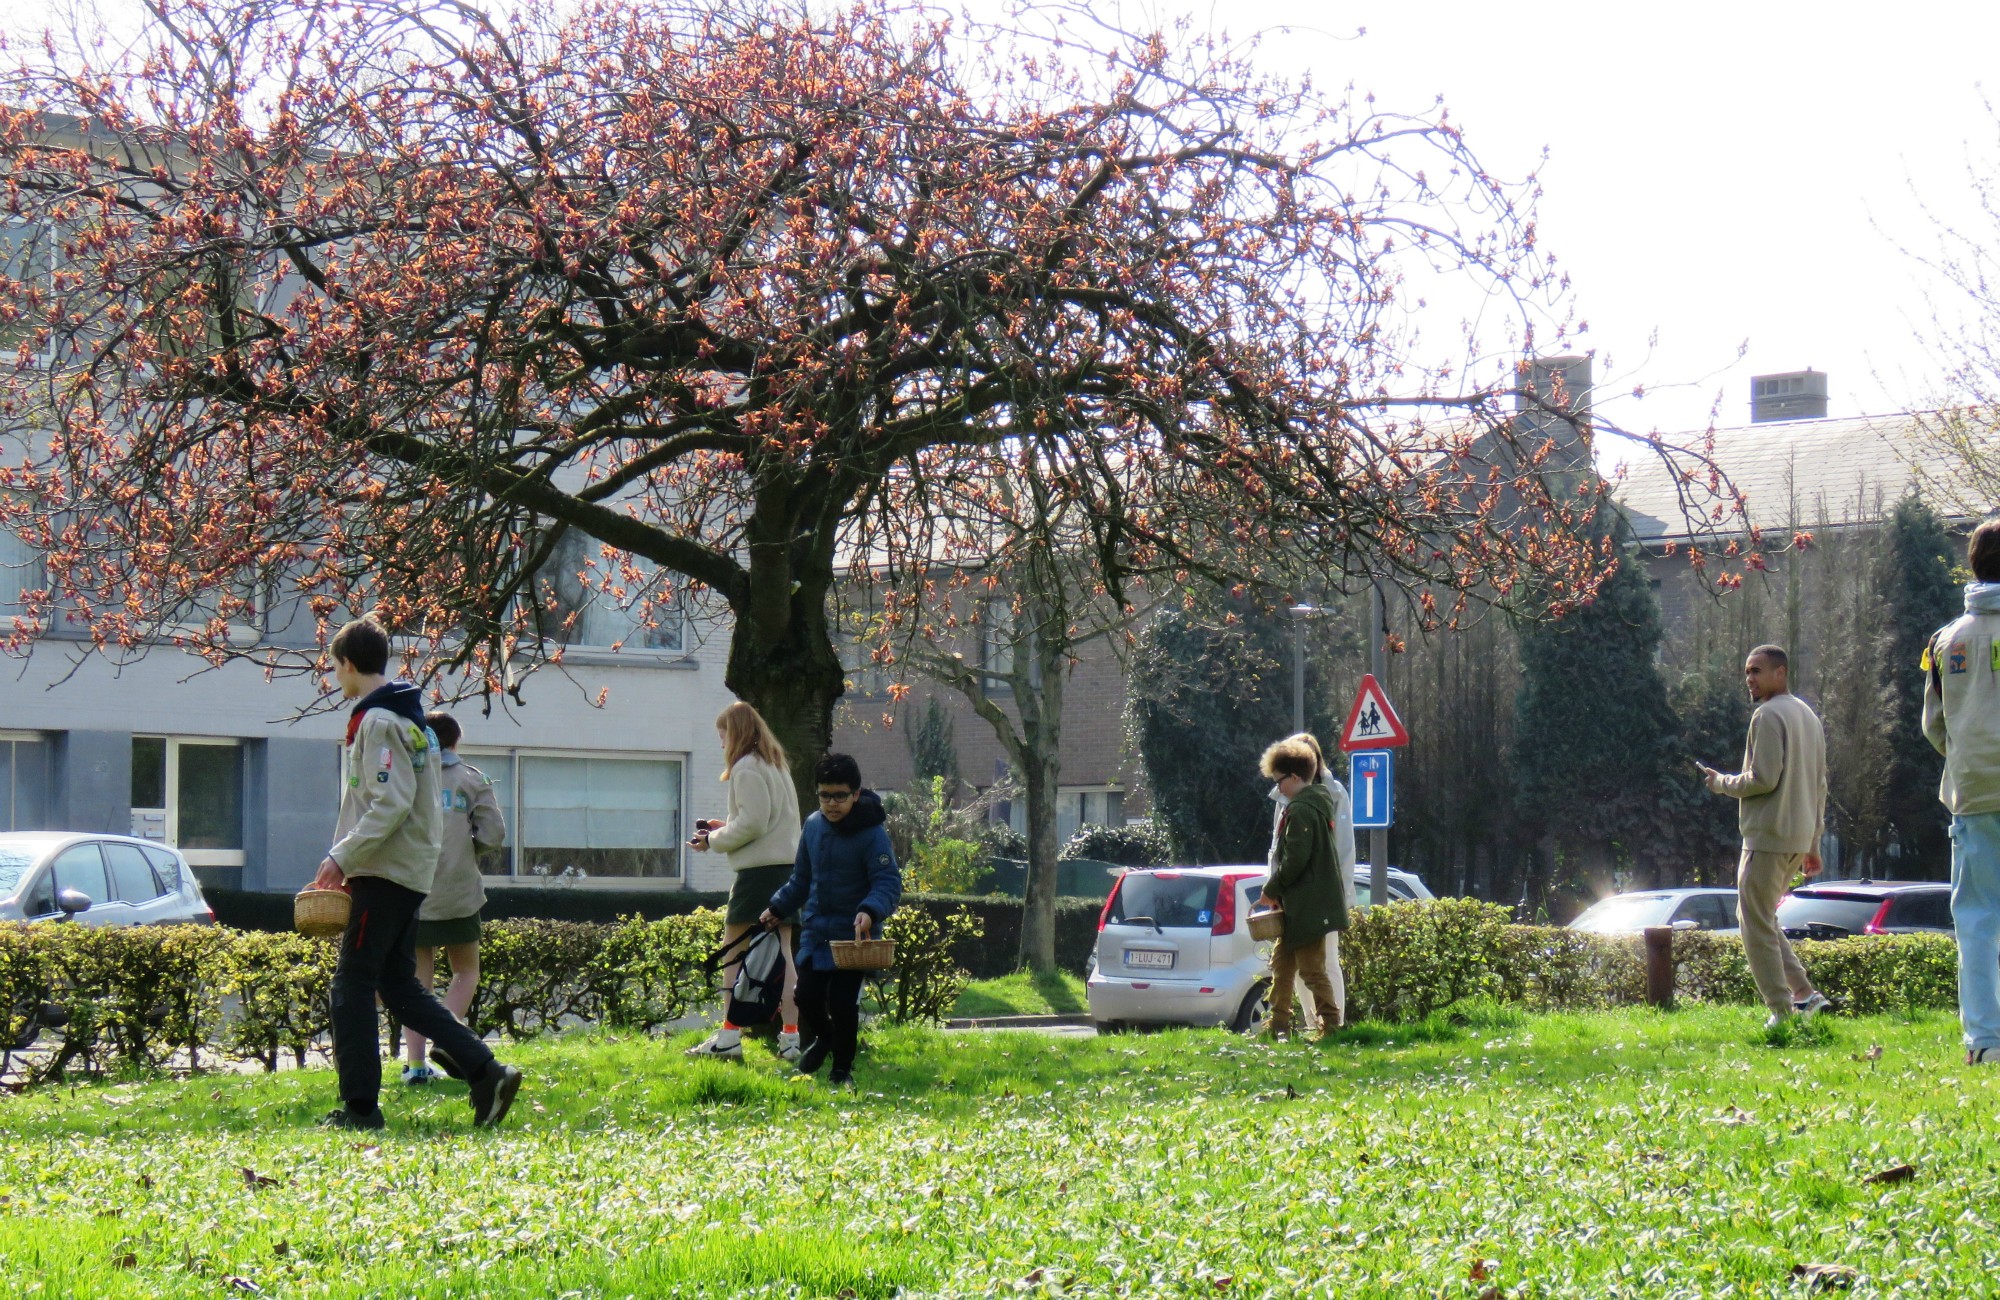 Pasen | Paaseieren rapen na de viering door de kinderen op het grasplein voor de kerk